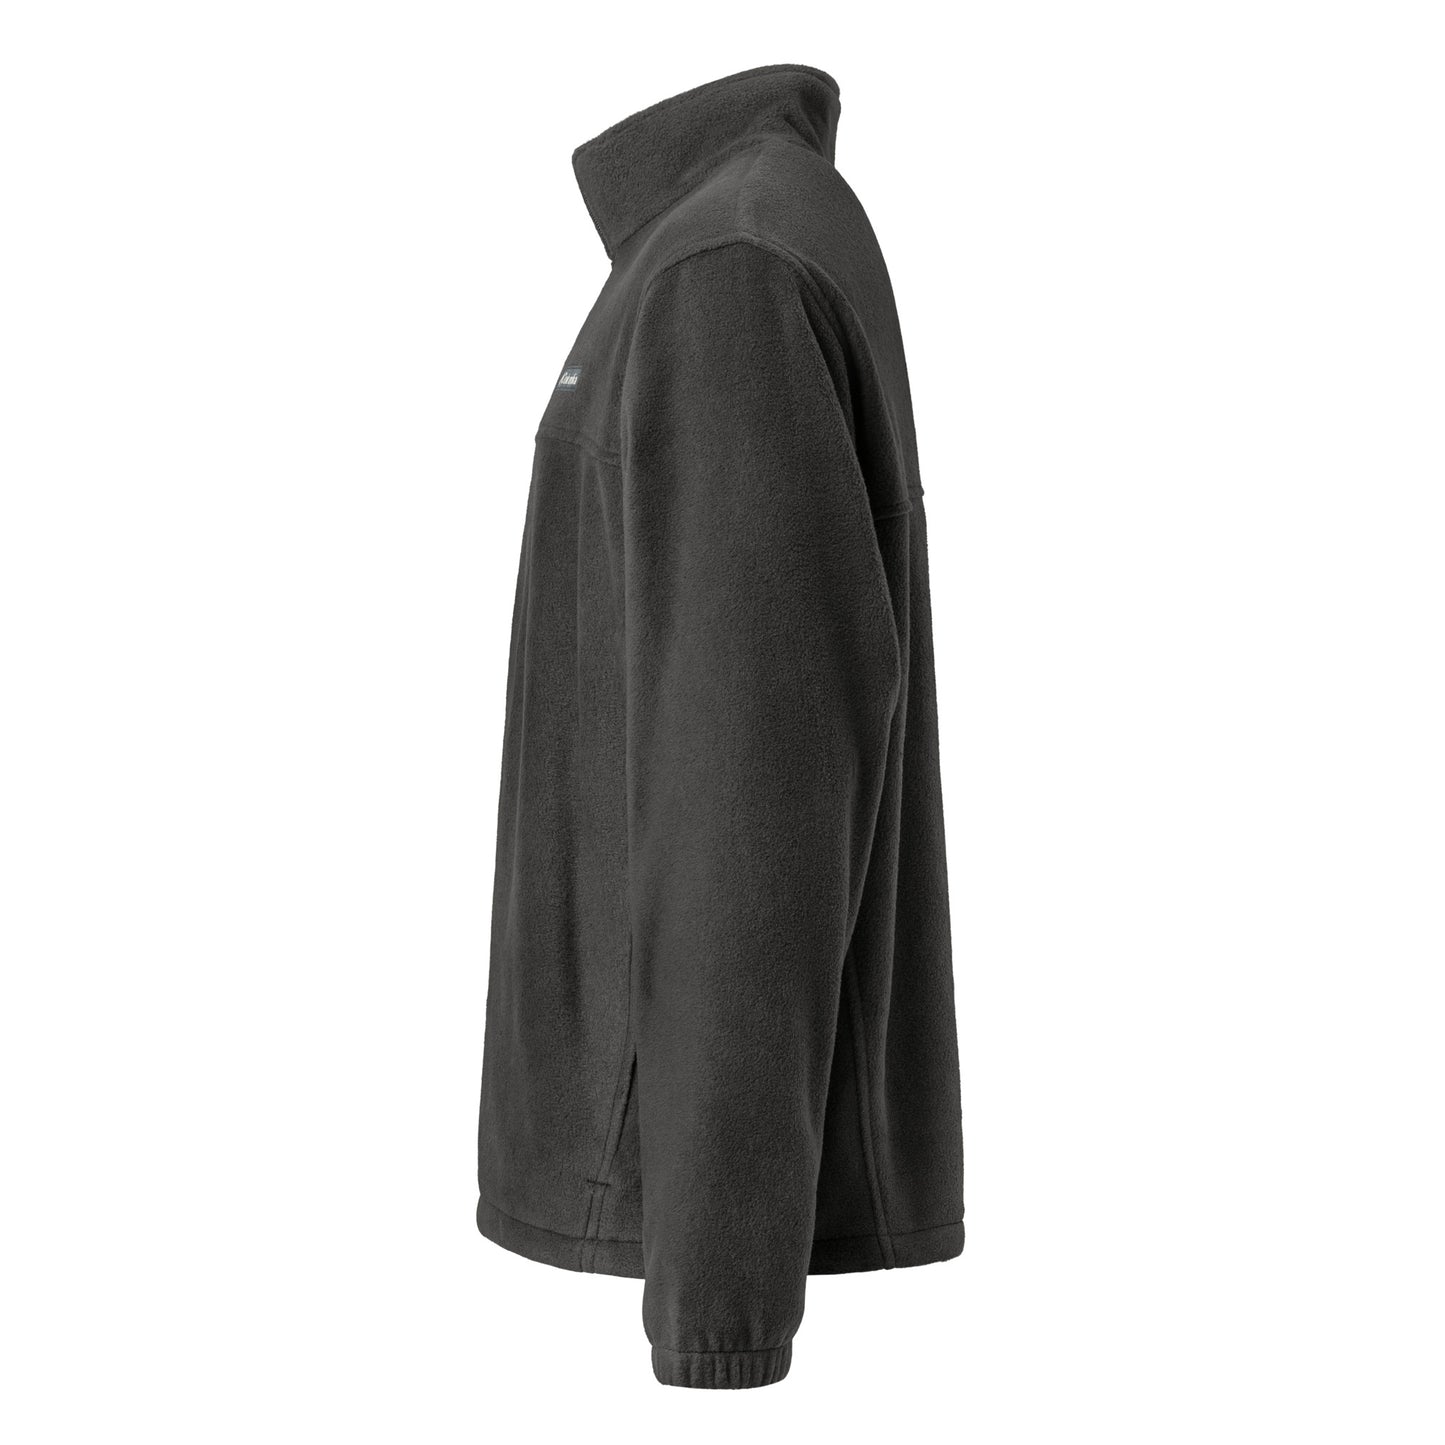 BINFO x Columbia fleece jacket